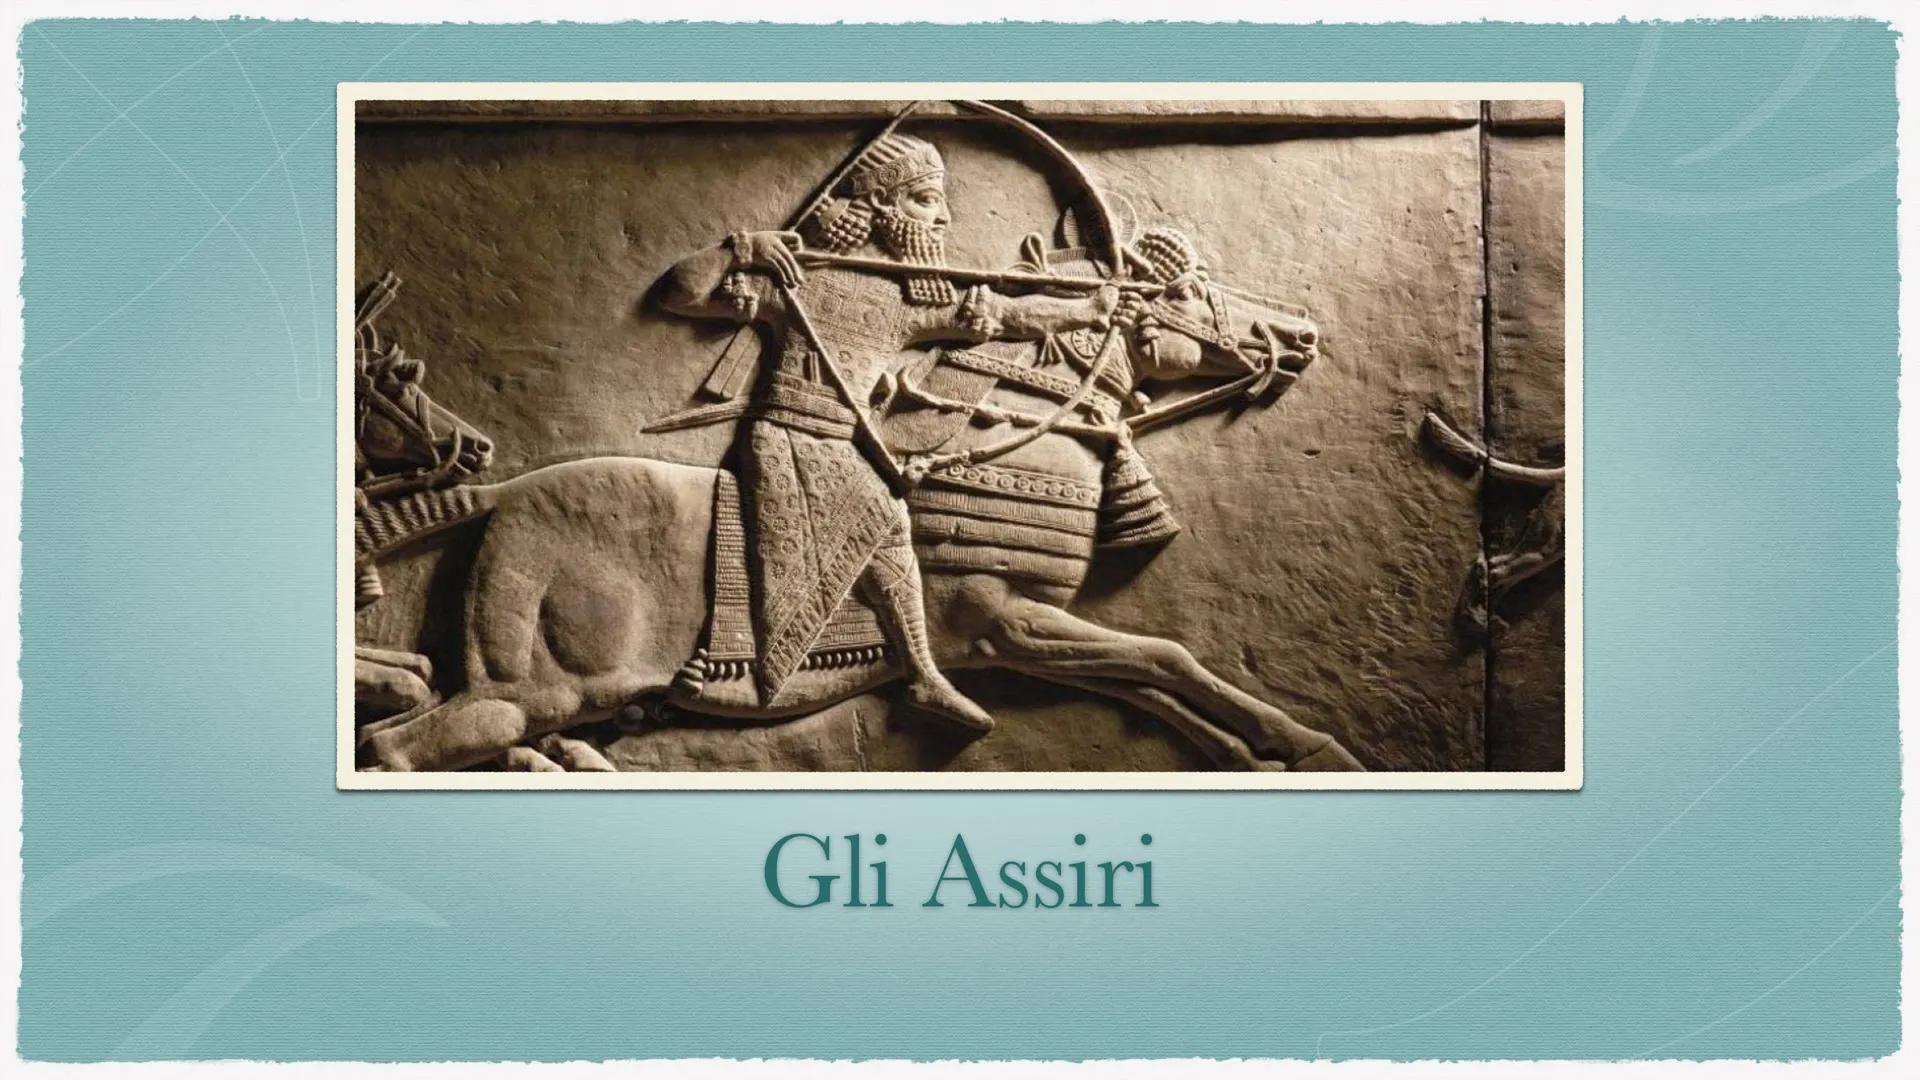 Gli Assiri Gli Assiri
Hattusa
* Furono un popolo di pastori nomadi di origine SEMITICA.
* Dove ebbero origine? Probabilmente nell'odierna SI